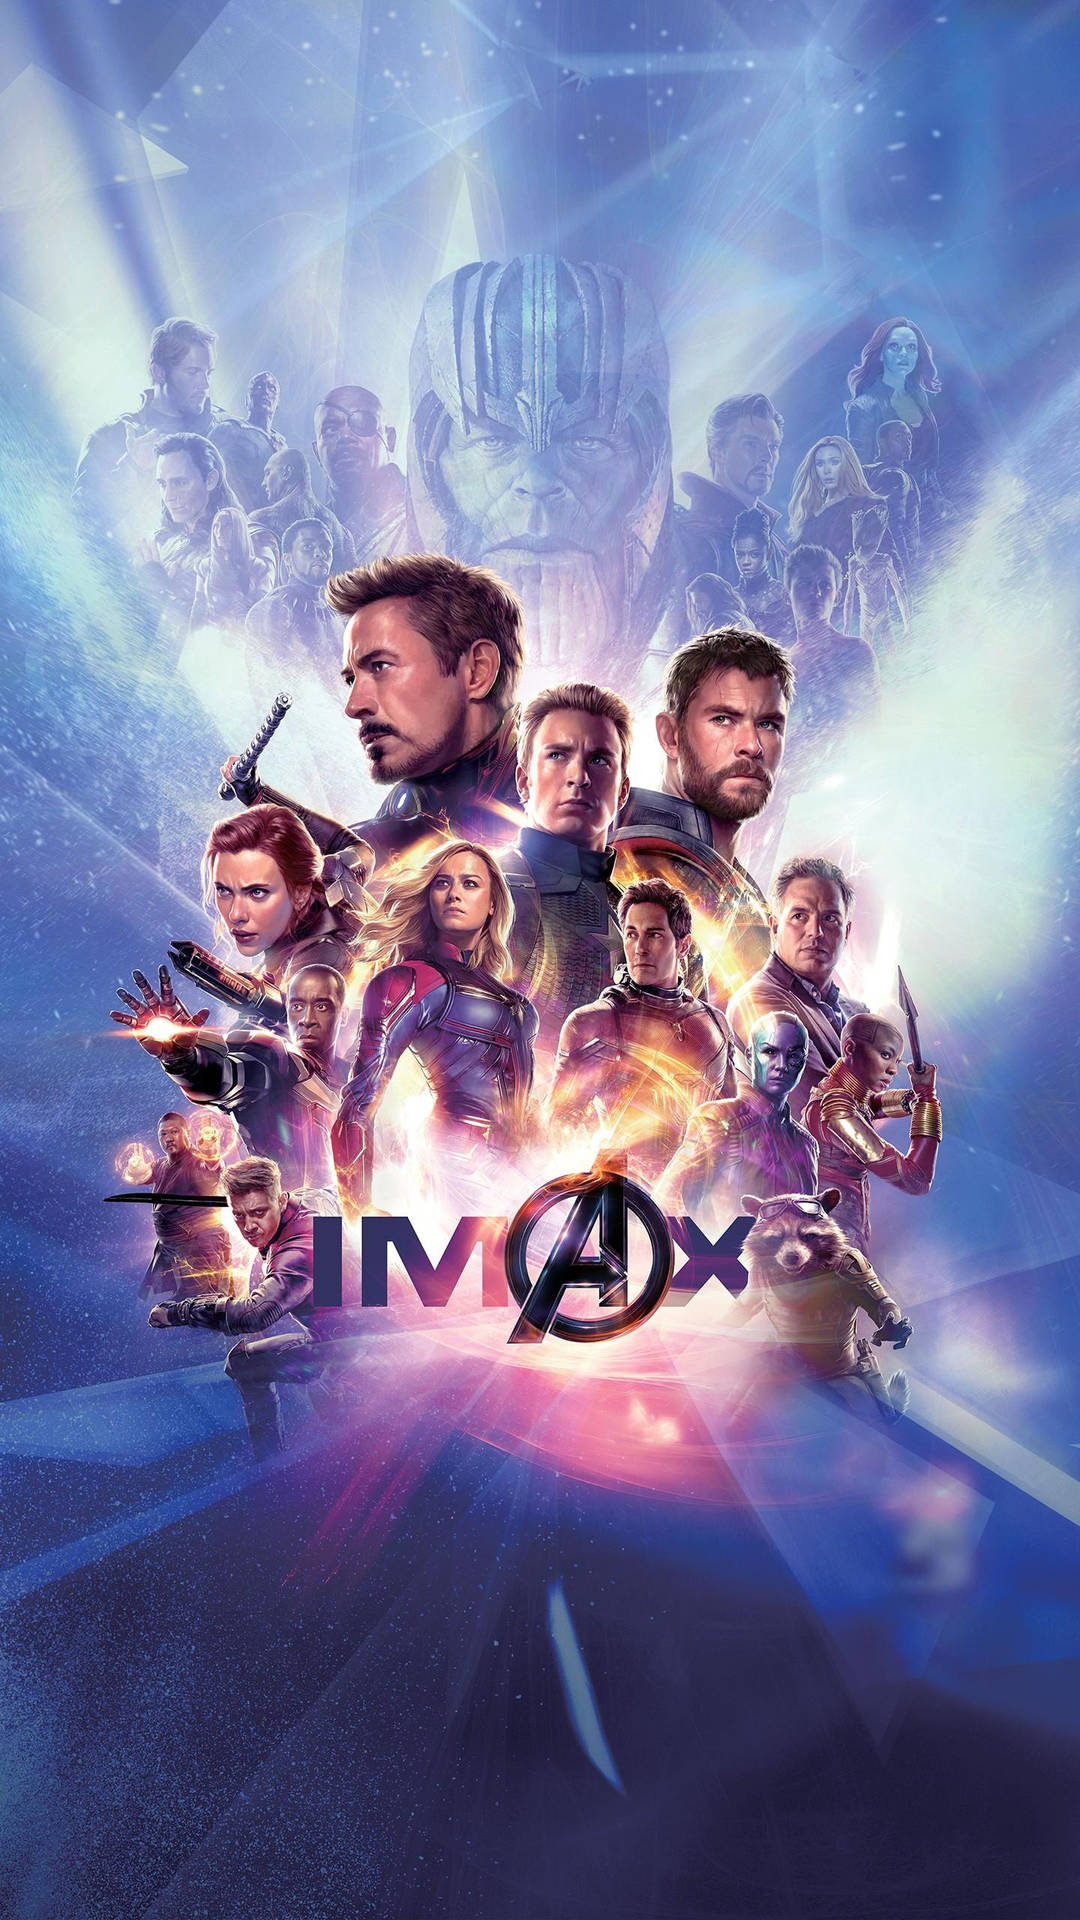 Avengers Iphone X 1440 X 2560 Wallpaper